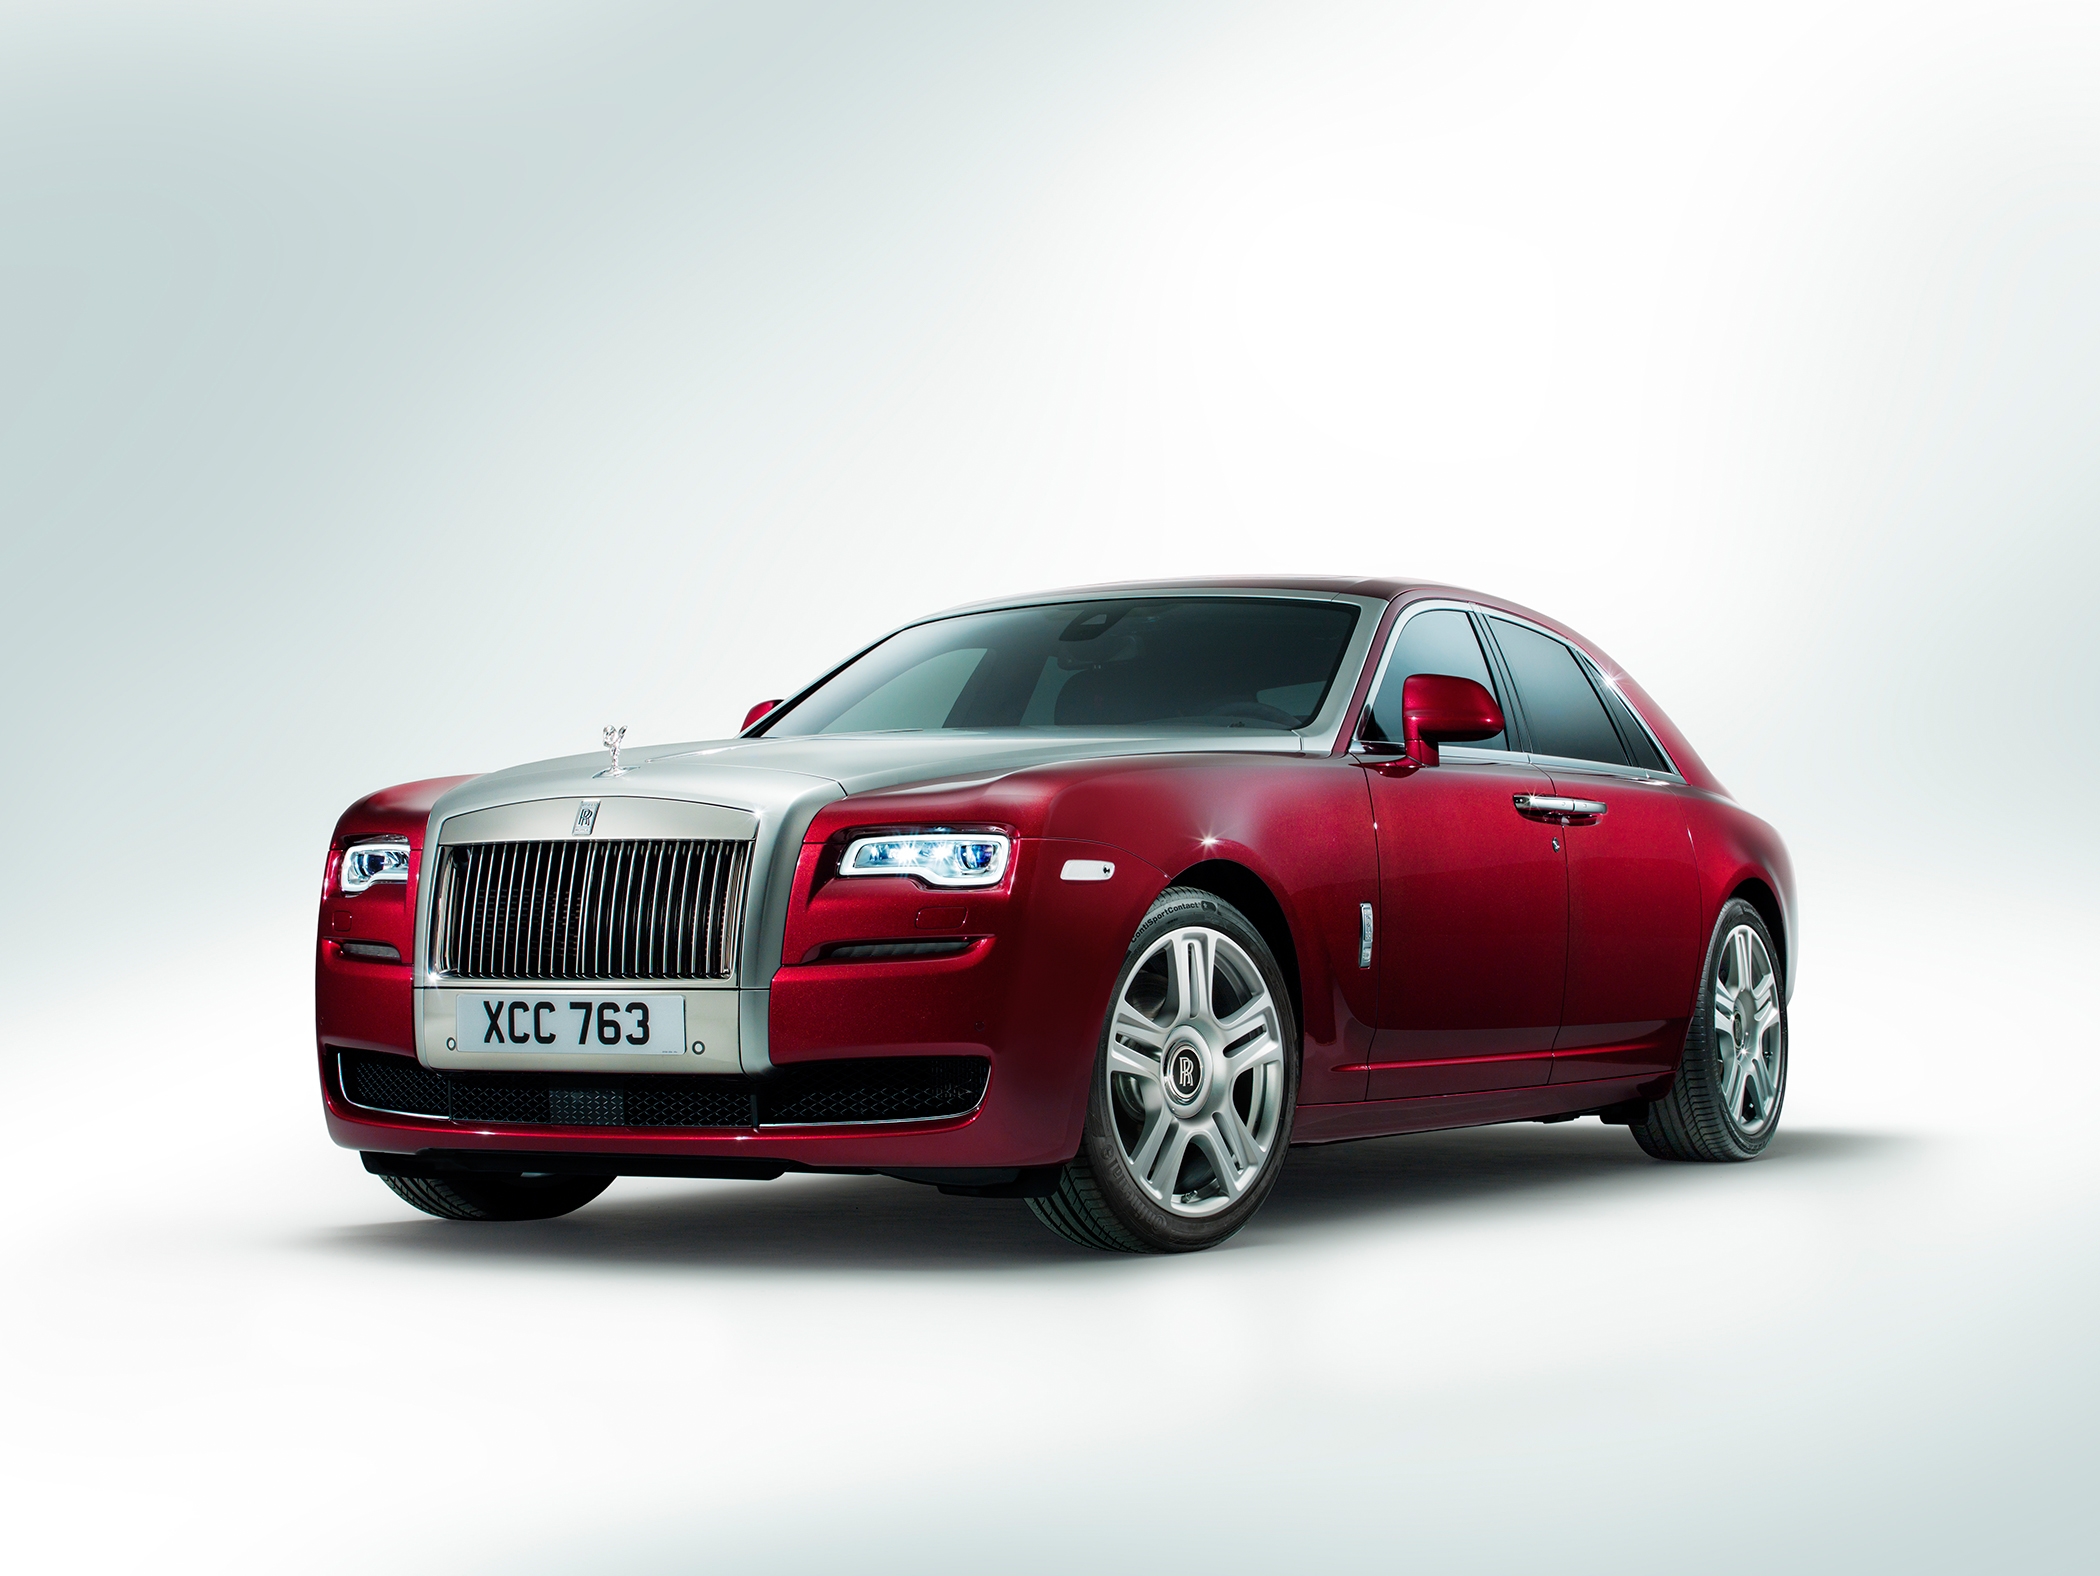 ‘lật Tẩy 10 Lời đồn Về Rolls Royce Cũng Có Lúc Hỏng Không Tốt Như Quảng Cáo Và được Dùng Làm 